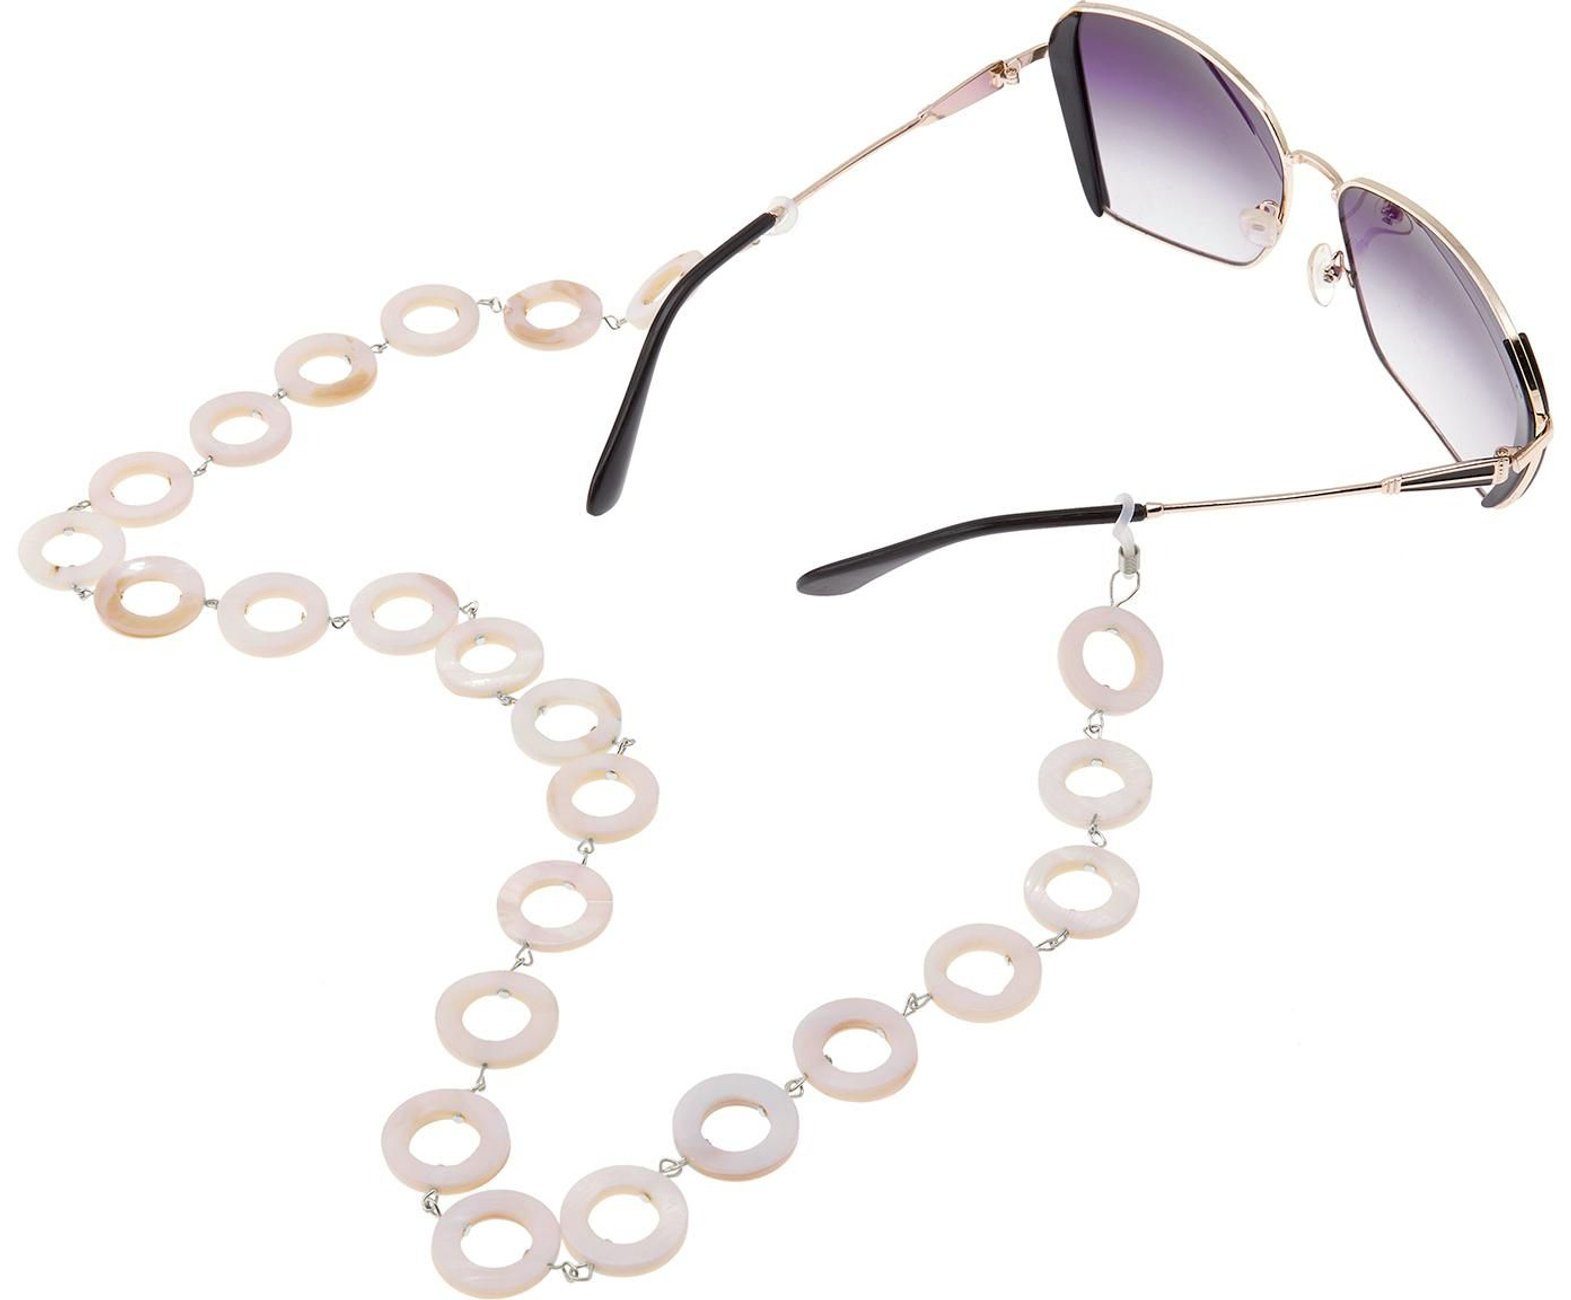 Damen Schmuck Gemshine Perlenkette Brillenkette für Sonnenbrille, Lesebrille, Perlmutt Donut Scheiben, Made in Germany